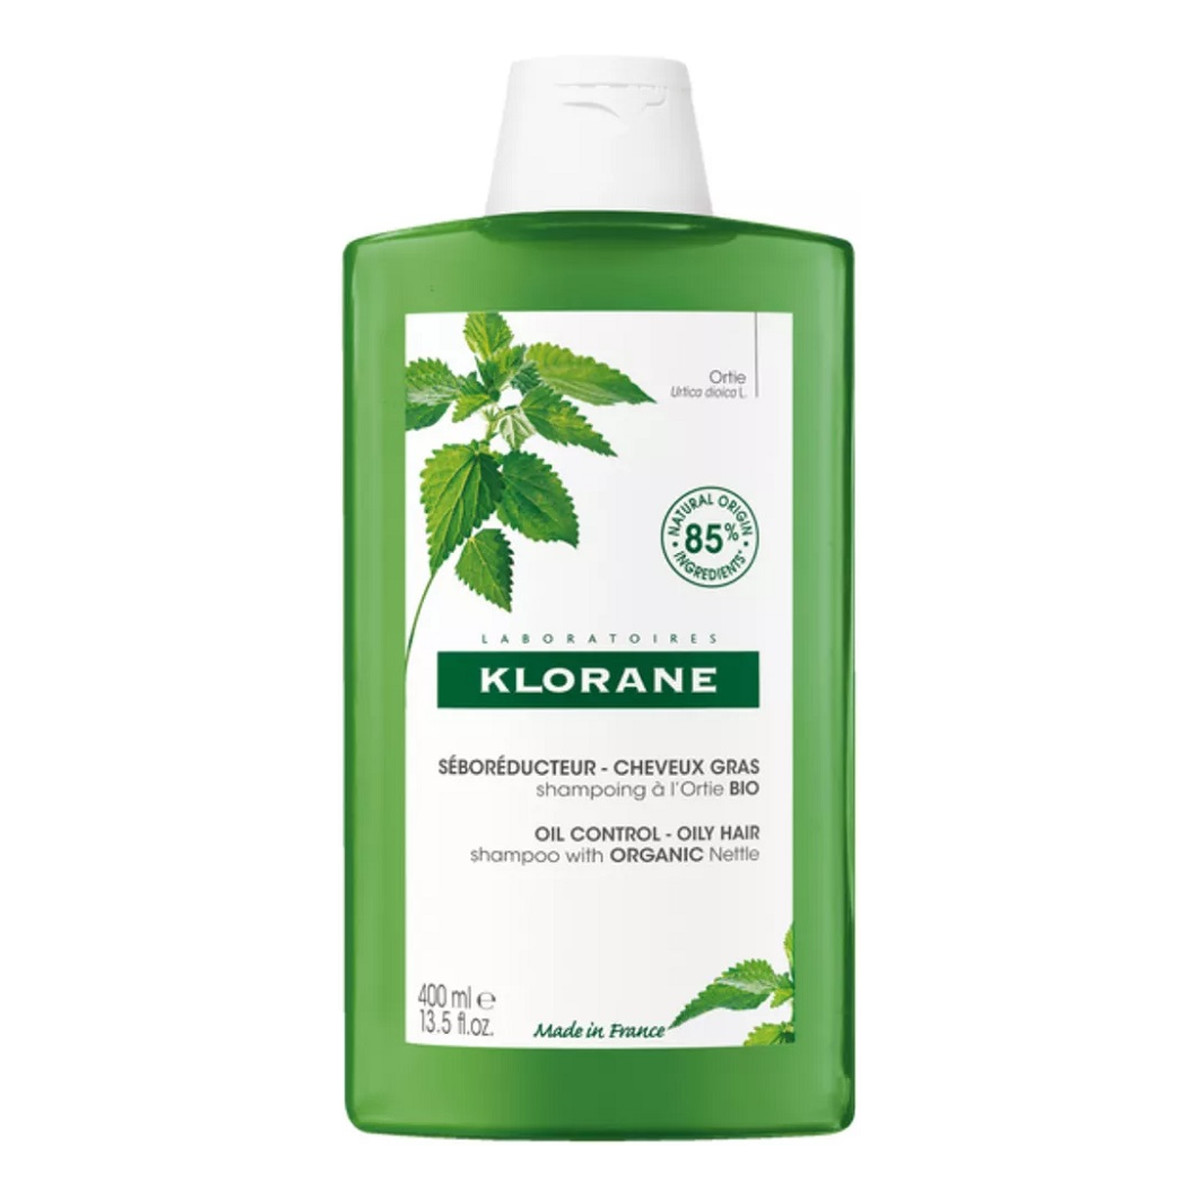 Klorane Oil control shampoo szampon do włosów przetłuszczających się z organiczną pokrzywą 400ml